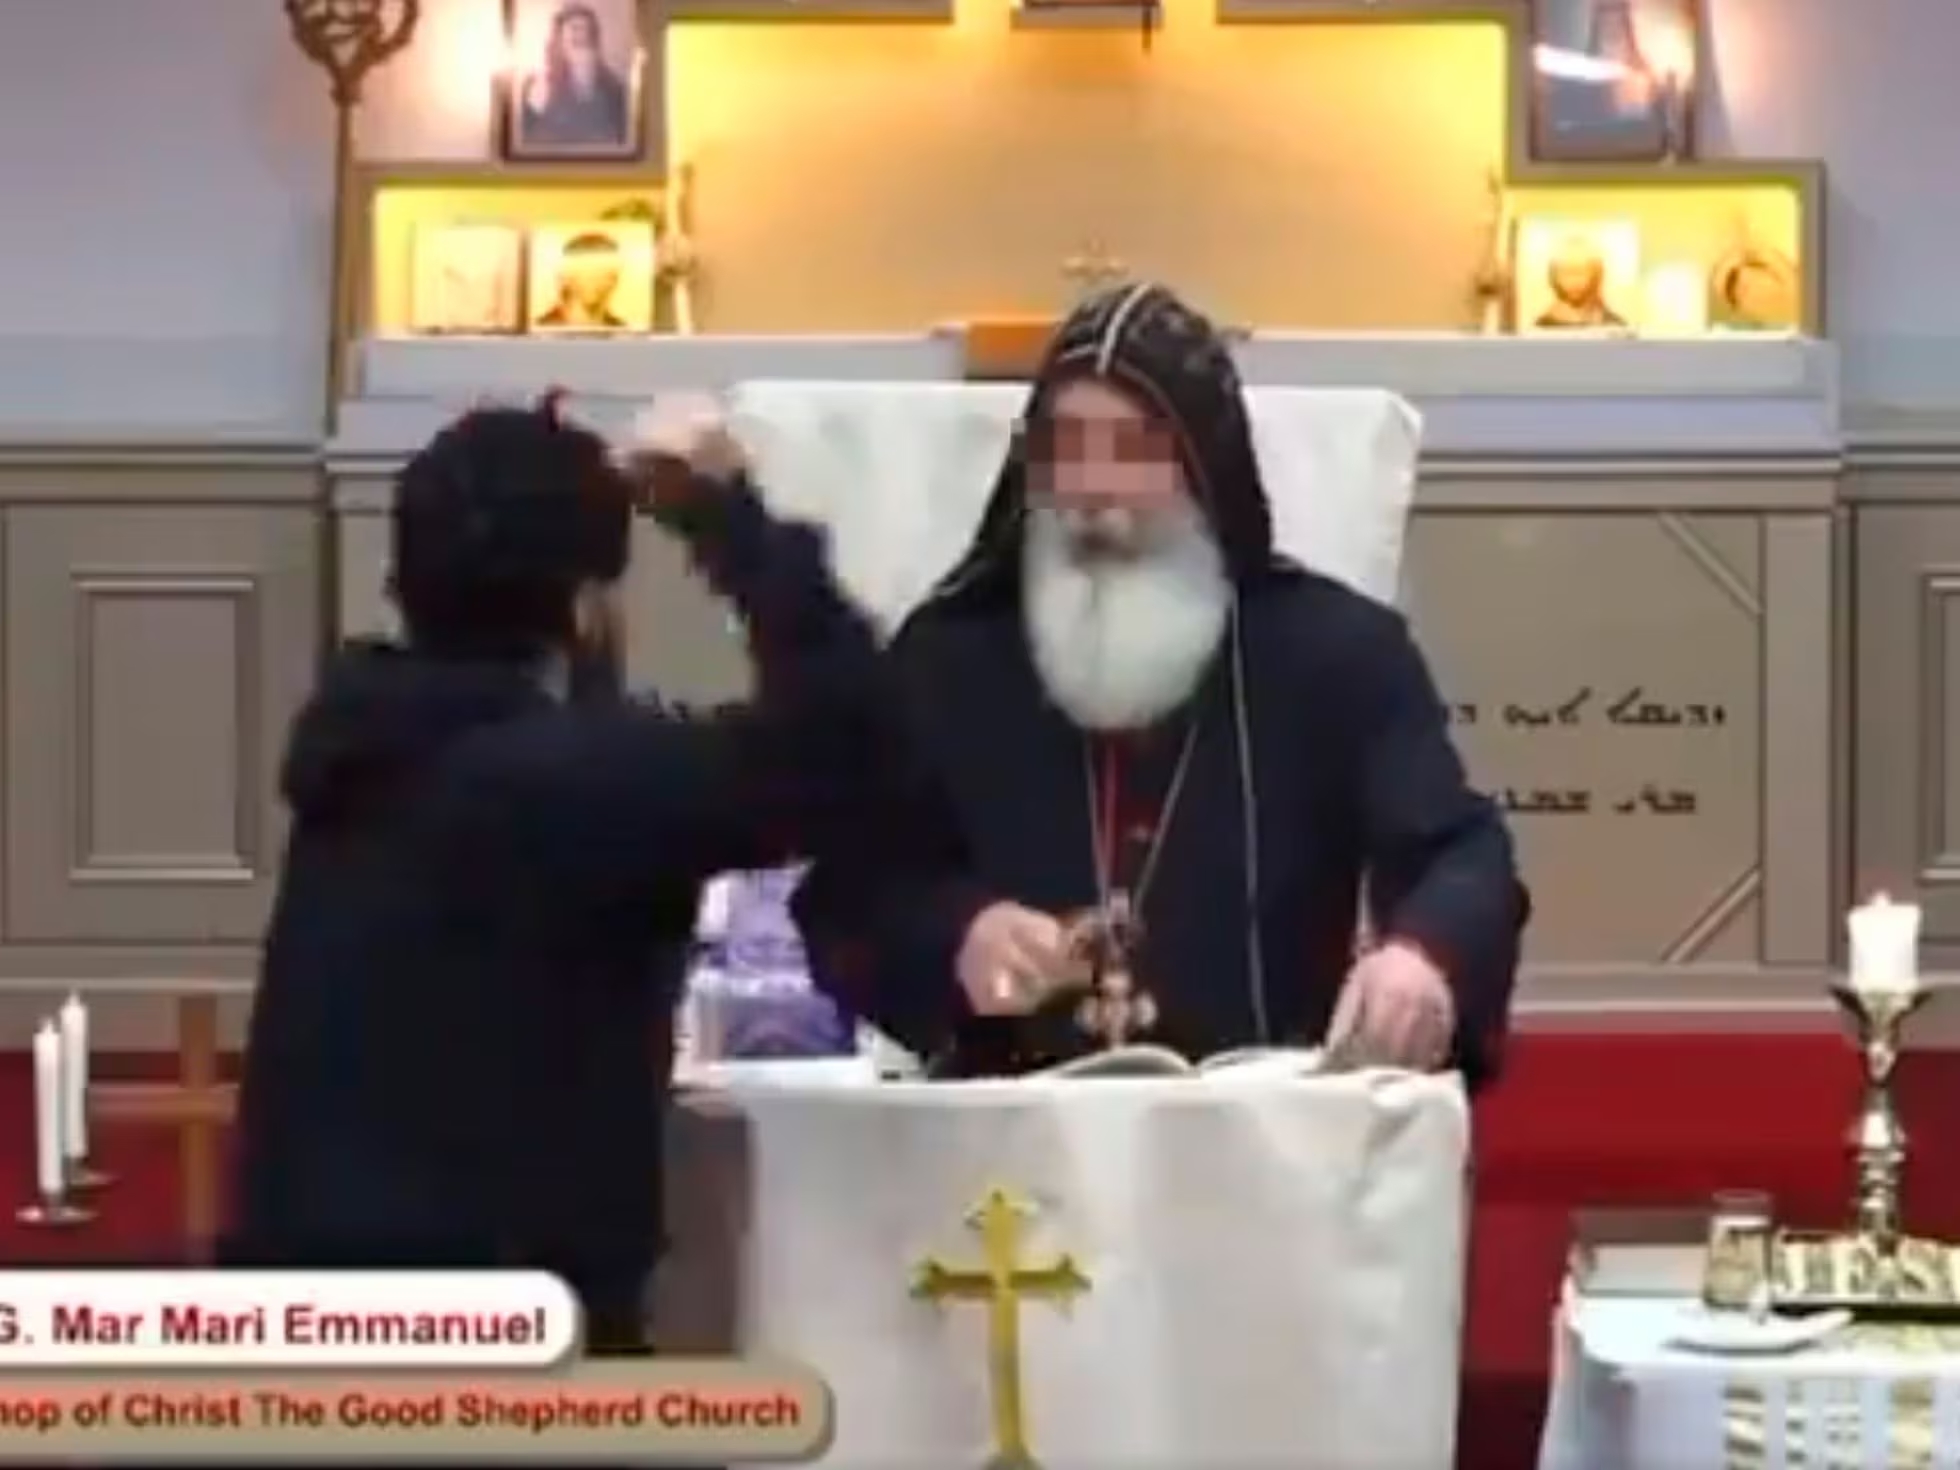 En redes sociales circula video donde apuñalan a sacerdote ortodoxo en medio de una misa